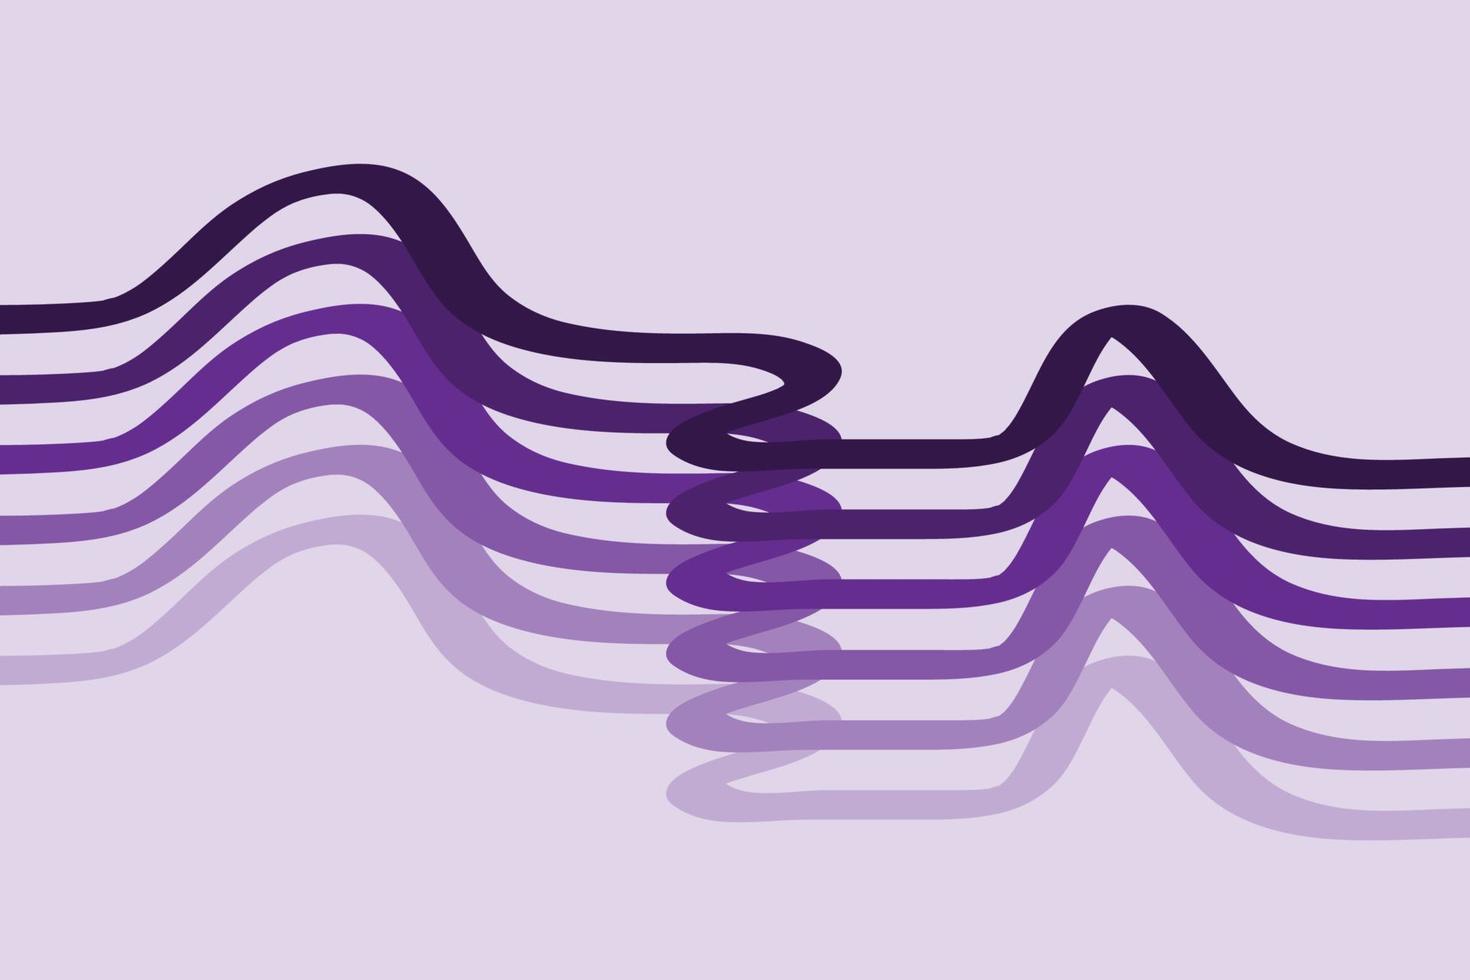 buen fondo abstracto con púrpura, eps10, artístico y elegante vector